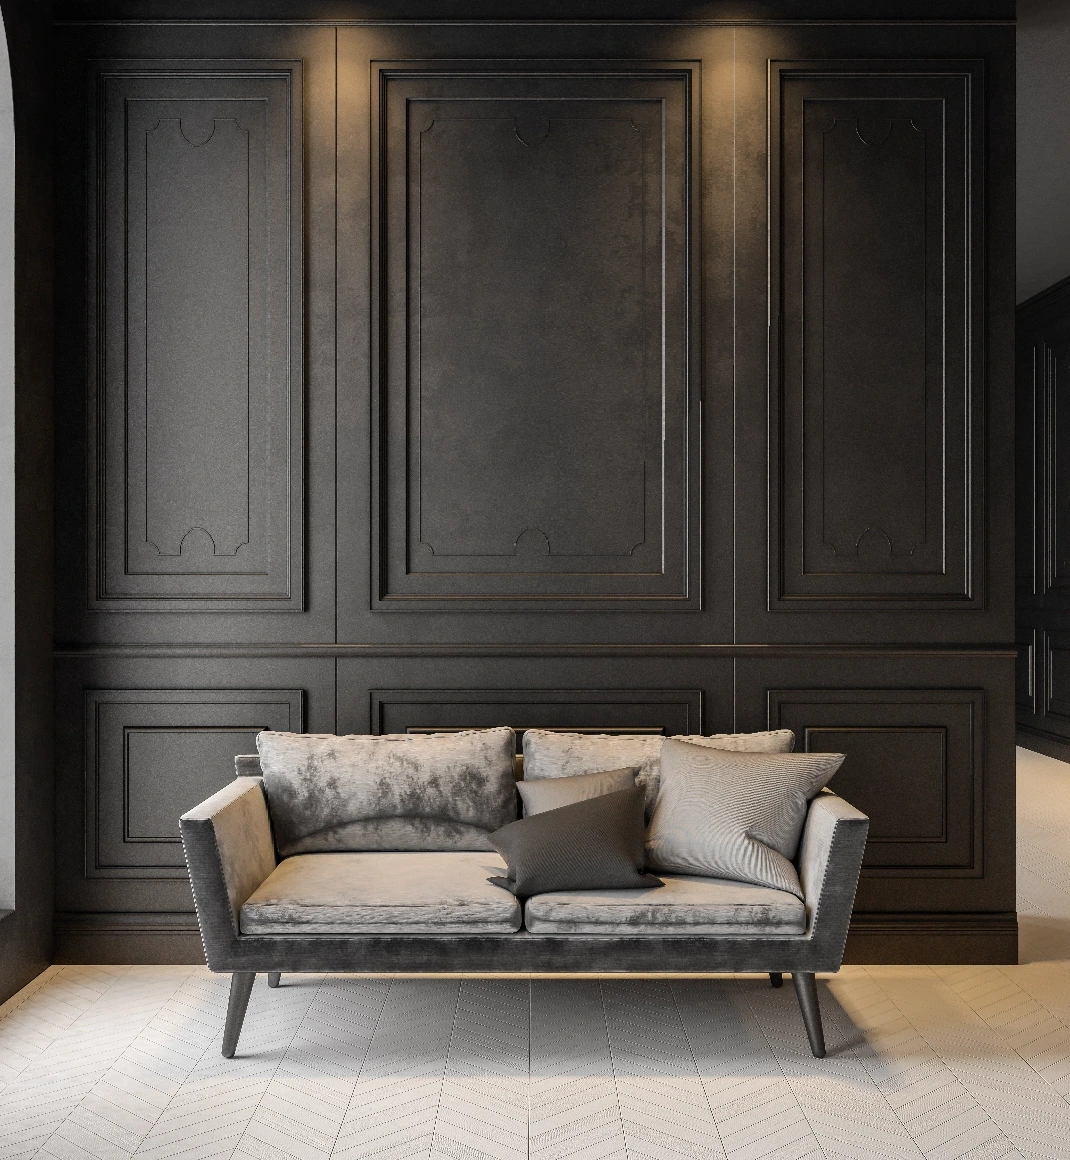 Specialdesignad soffa i en elegant hall med en mörk trävägg som bakgrund.